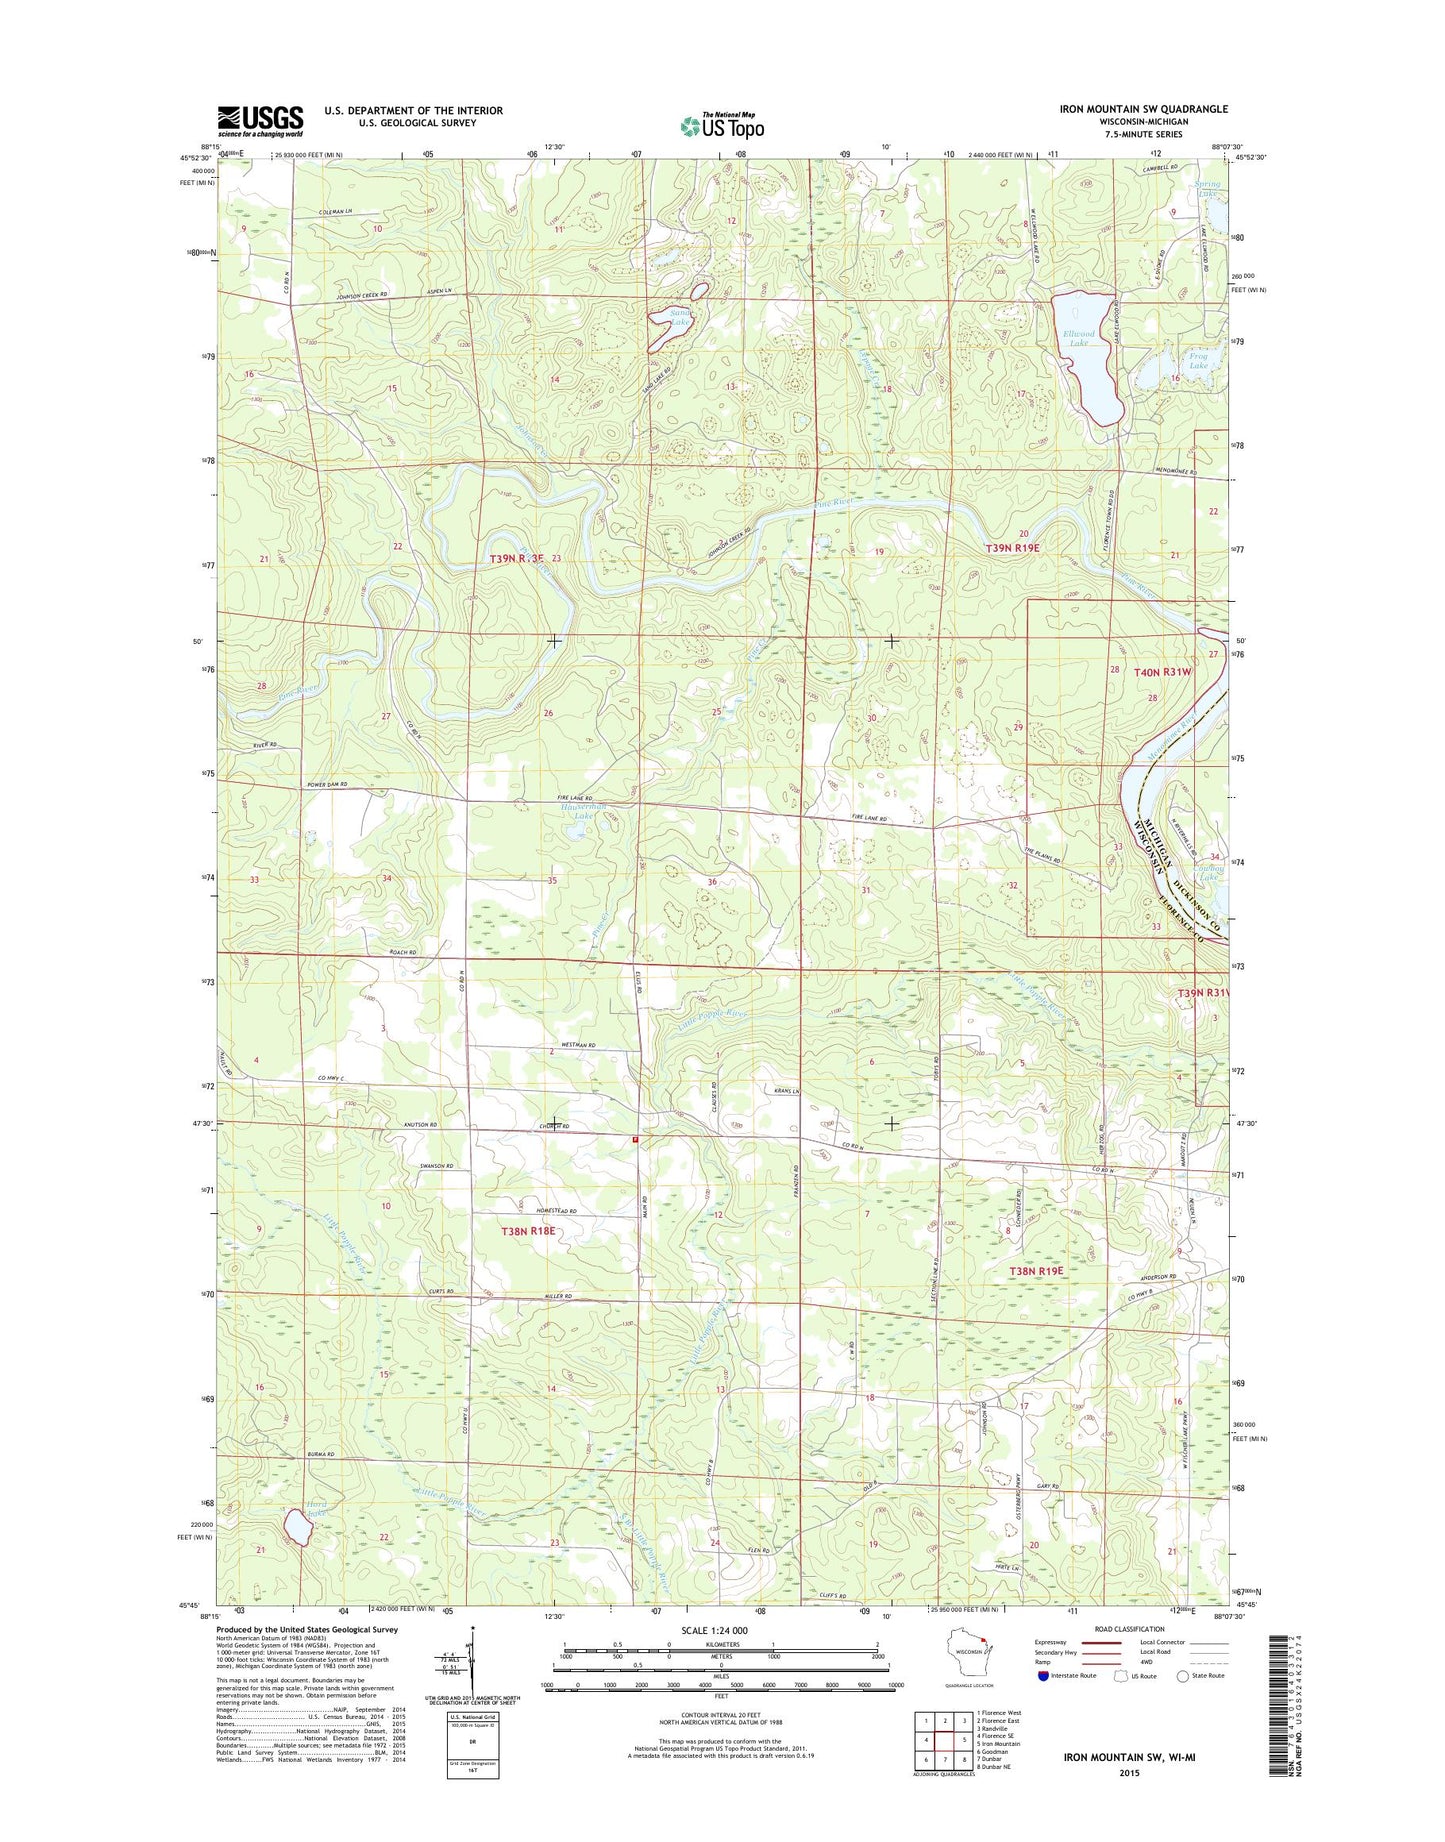 Iron Mountain SW Wisconsin US Topo Map Image